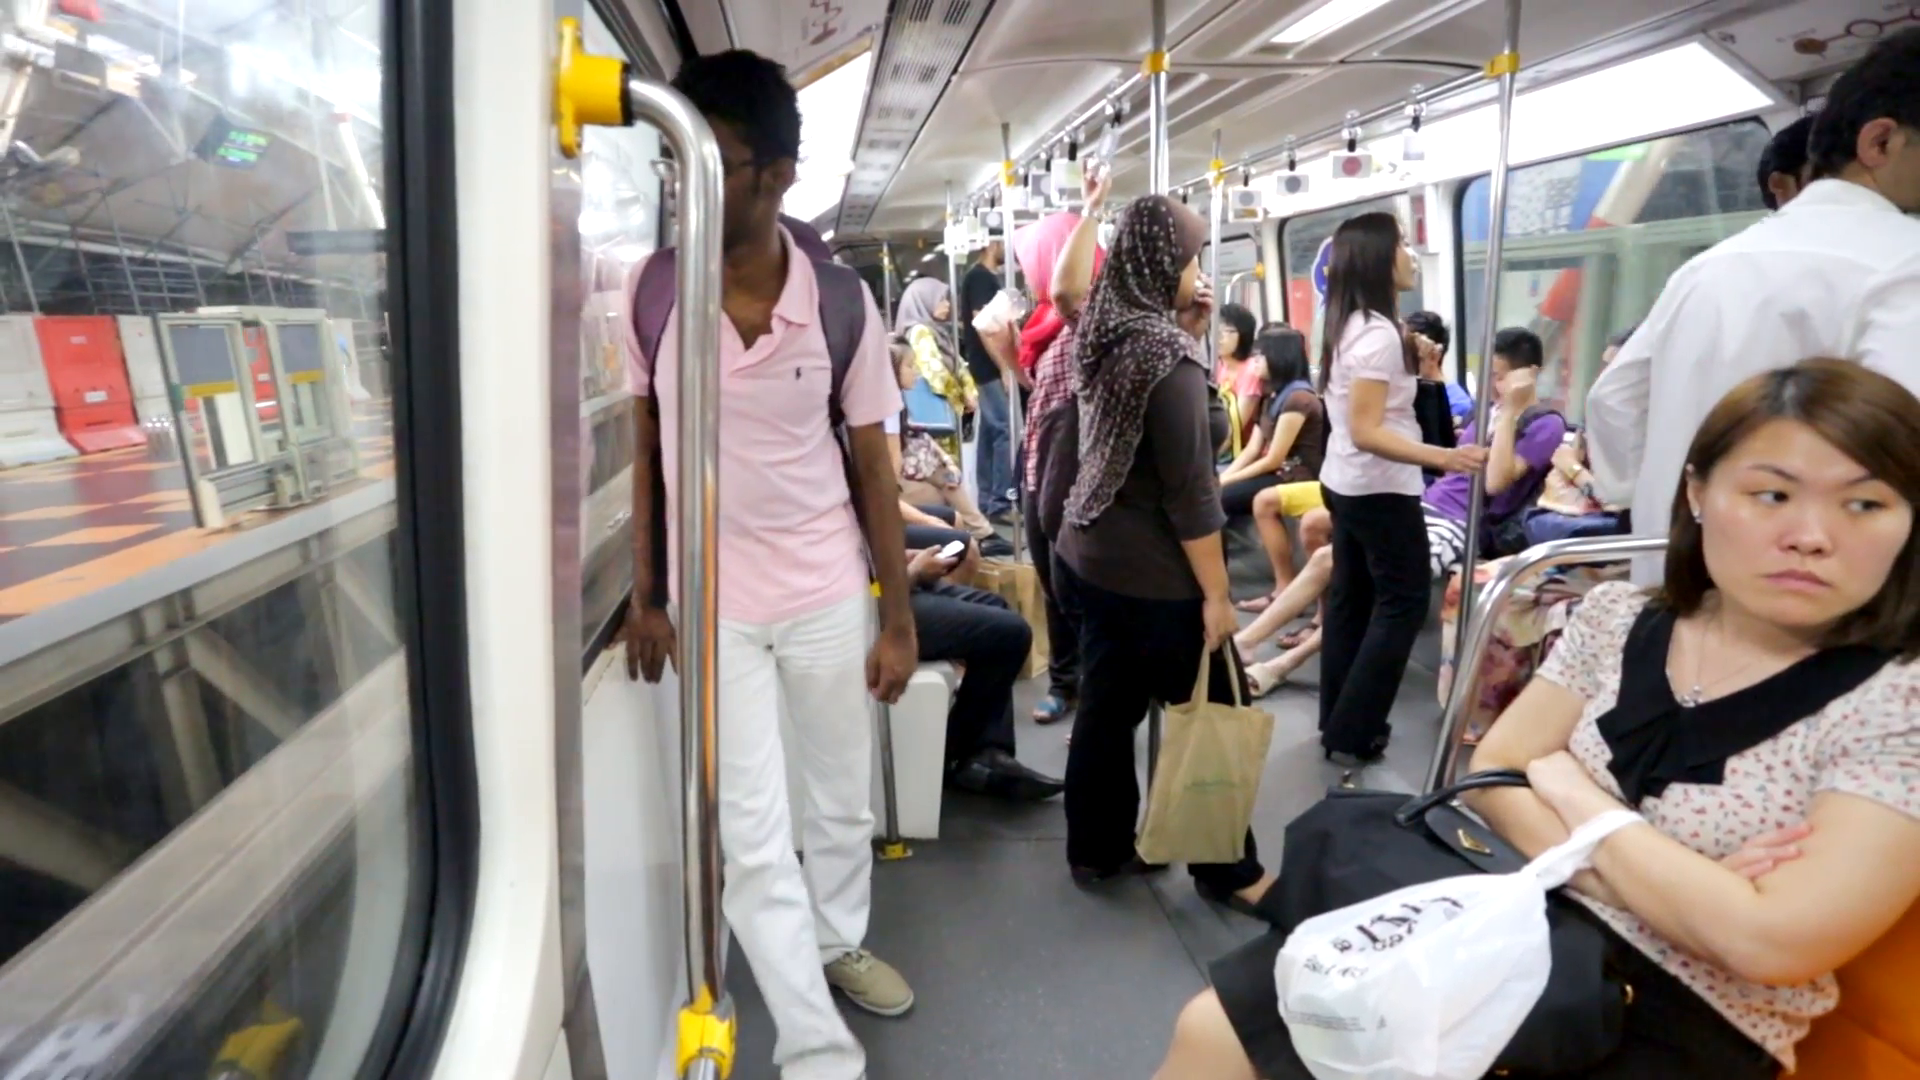 KUALA LUMPUR, MALAYSIA - CIRCA FEB 2014: People ride in monorail ...